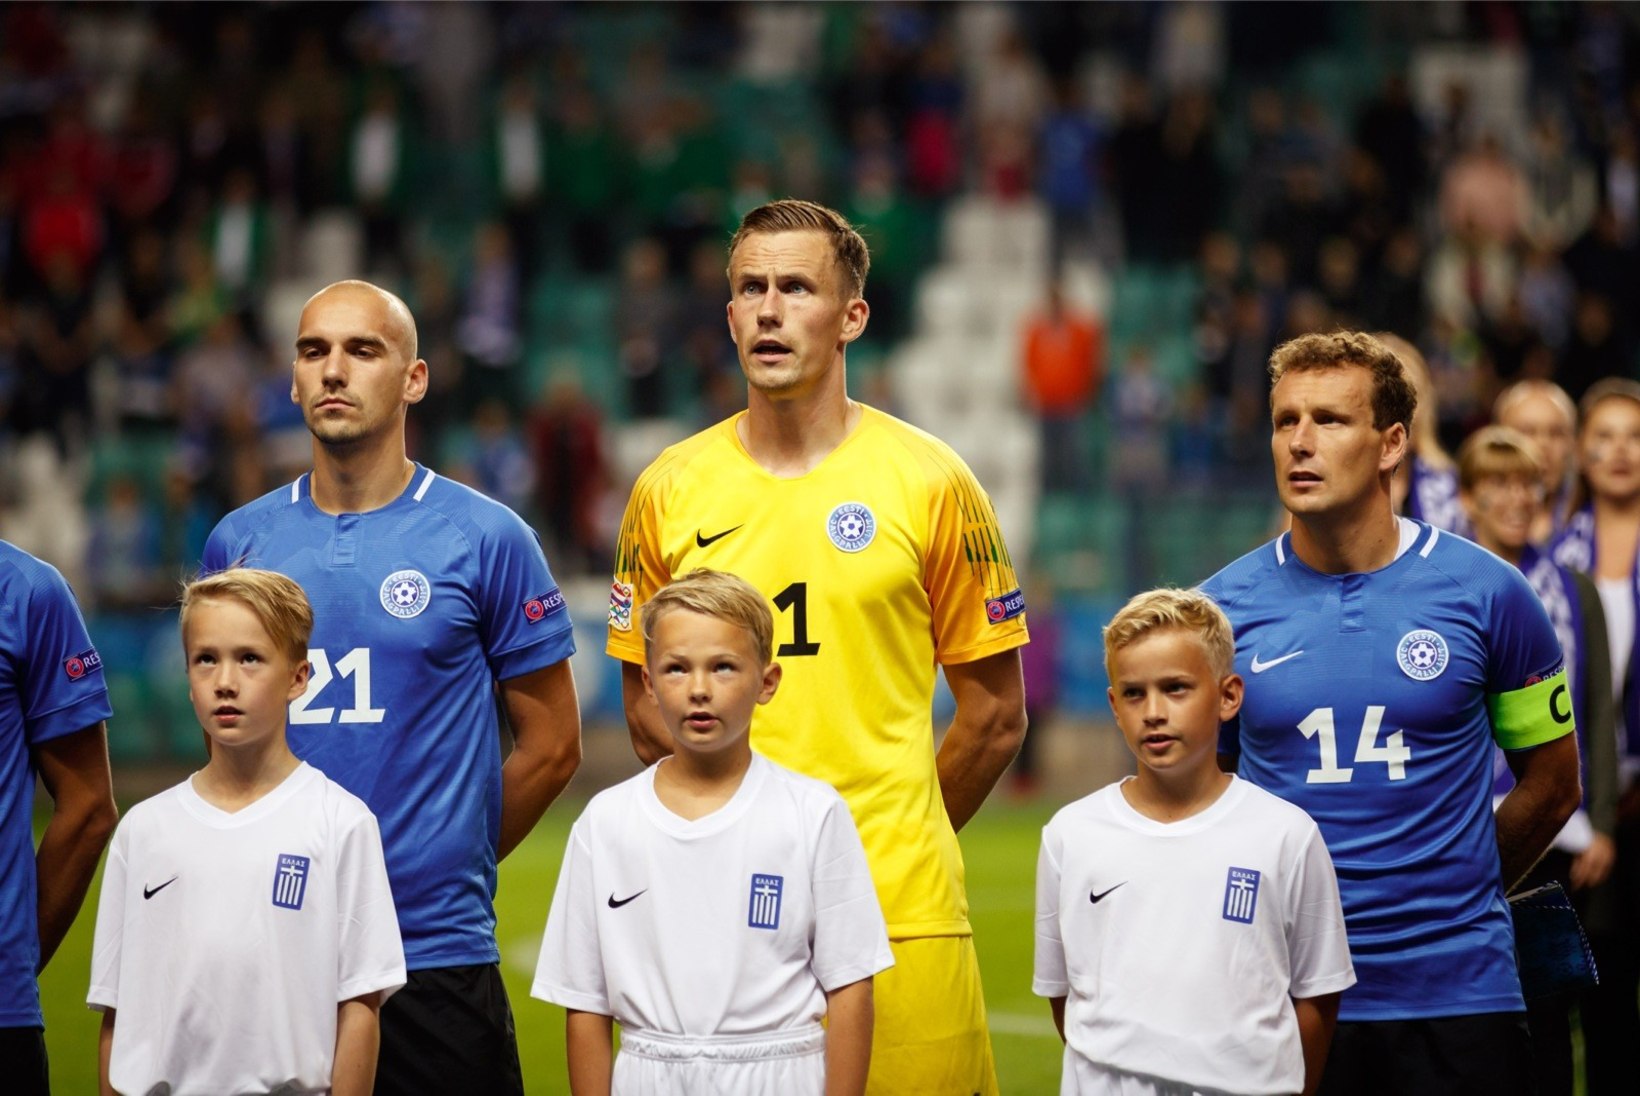 ÕHTULEHE ÜMARLAUD | Eesti jalgpalli sportlikul tasemel on tugev köha ja nohu, lisaks kerge palavik